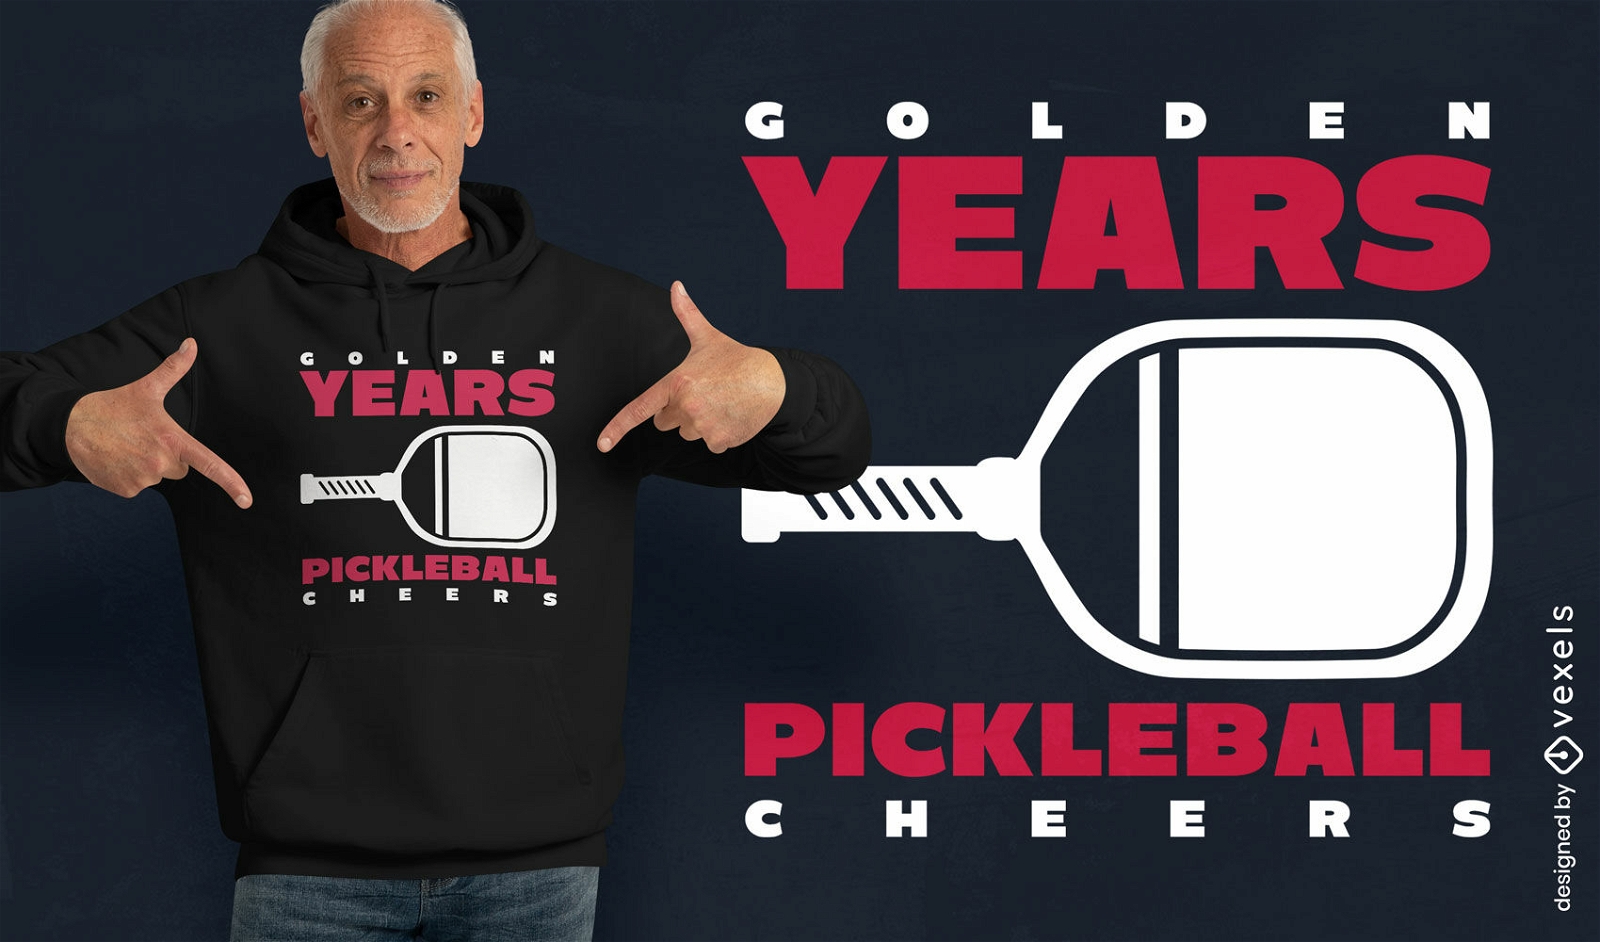 Diseño de camiseta de pickleball de los años dorados.